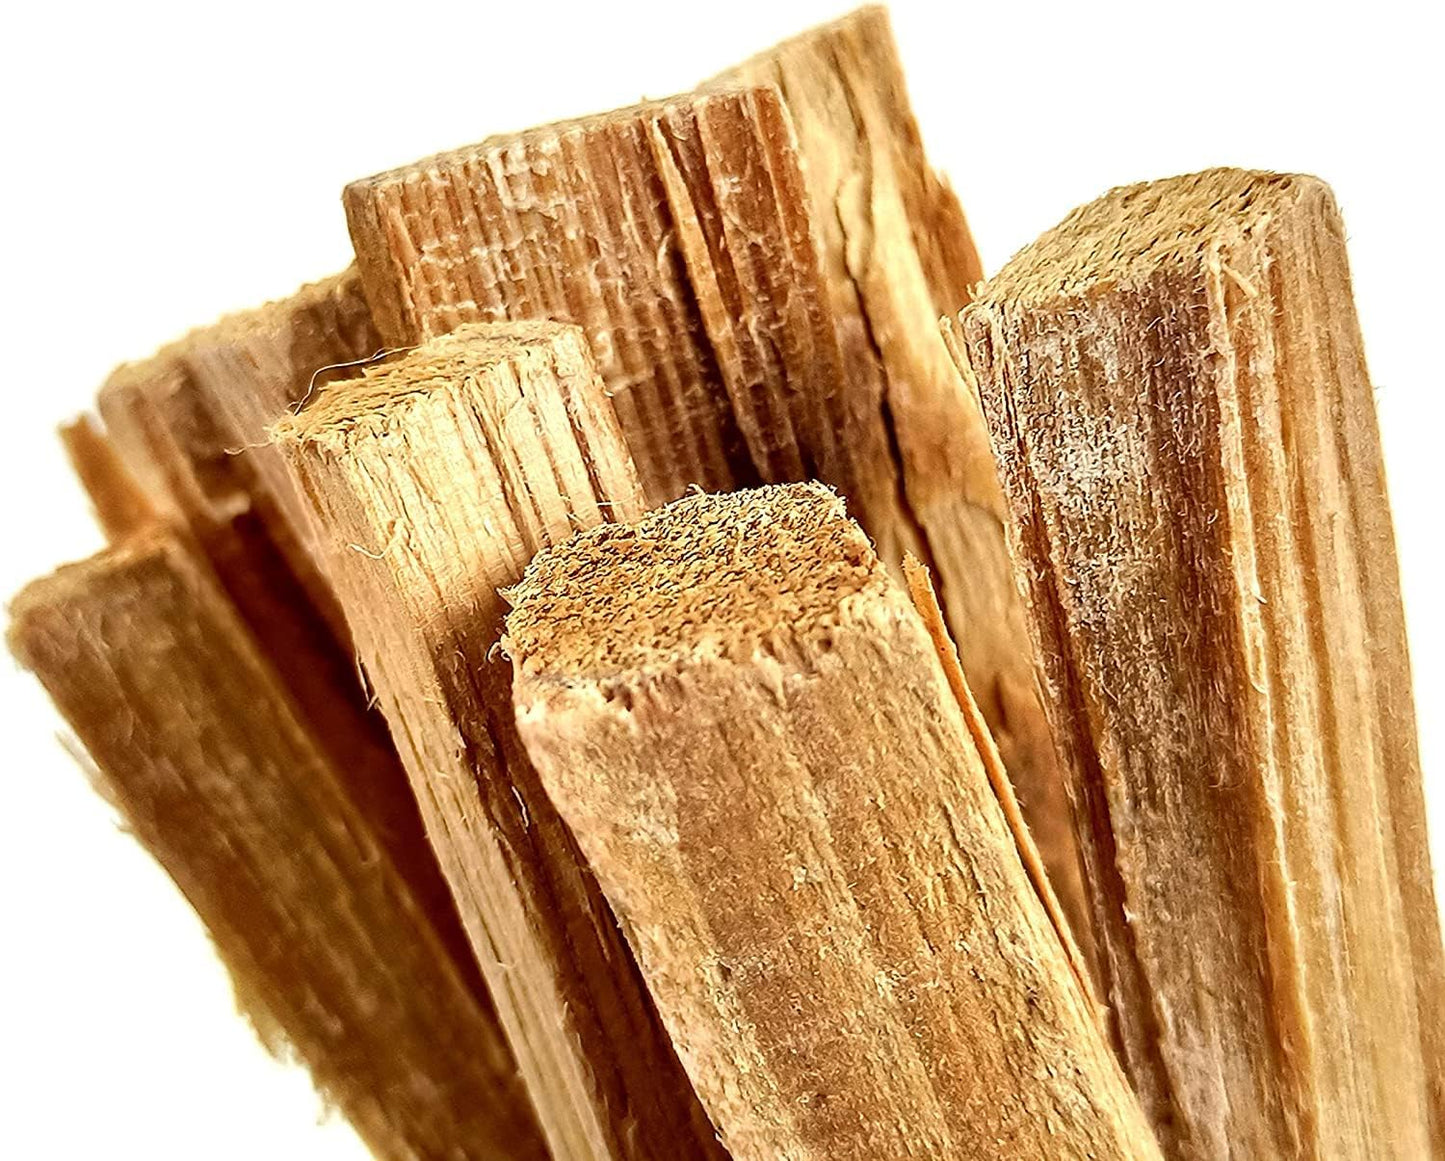 FEUERKAISER Kienspan Anzündhilfe, Fatwood Sticks (2,5 kg, 250 Stück, 10 cm lang) inkl. ca. 3,5 kg Nussschalen als Brennstoff, 100% Gesundheit- & umweltfreundlich